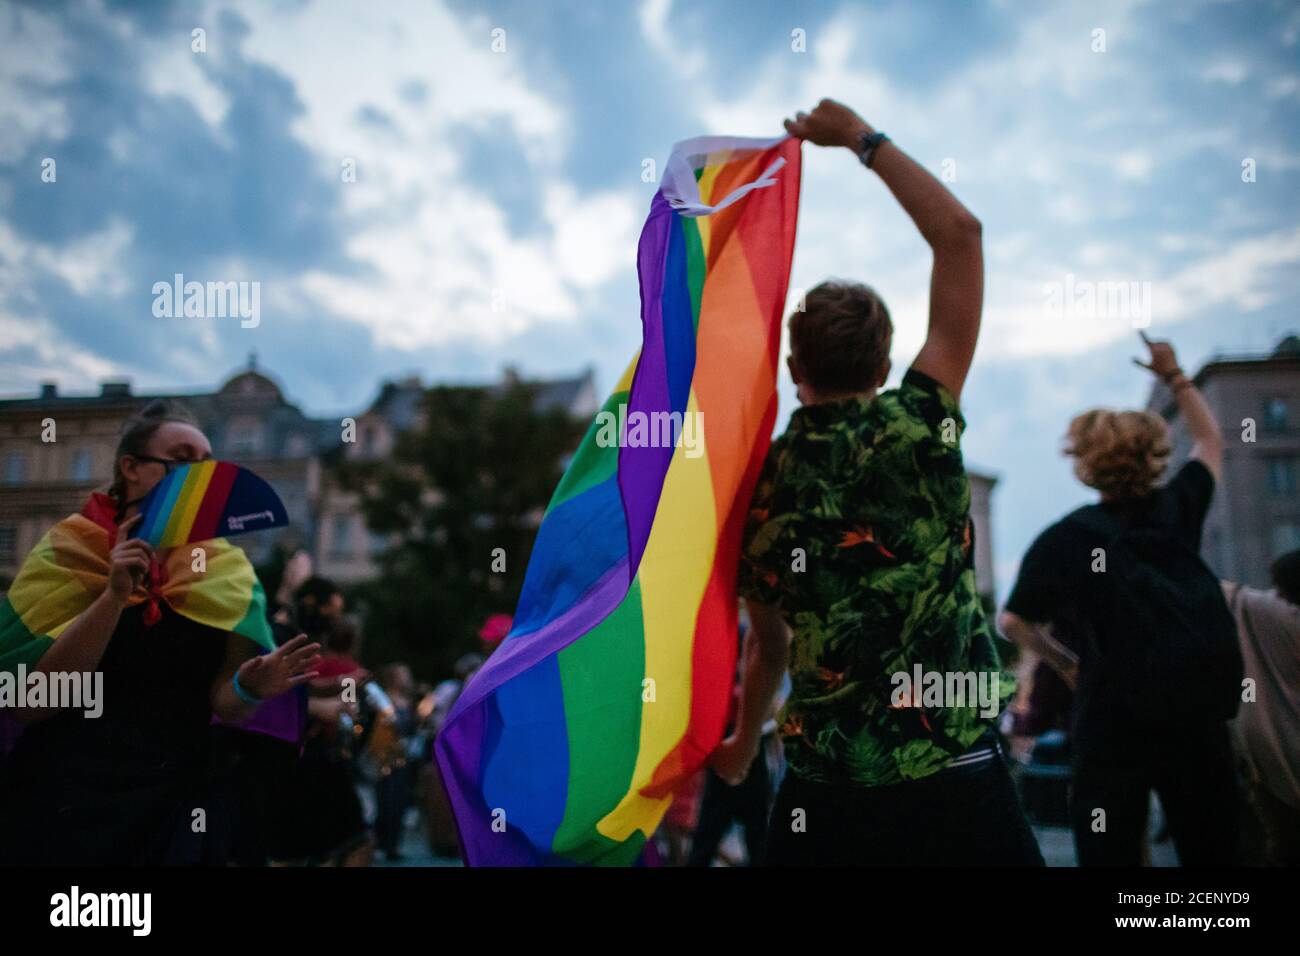 Un membro della comunità LGBTQ ha ondato una bandiera di orgoglio arcobaleno durante il marzo.la marcia annuale di uguaglianza, conosciuta anche come Pride Parade, ha attratto un numero particolarmente grande di partecipanti, così come due contromunazioni. In Polonia, recentemente si è svolto un acceso dibattito pubblico tra sostenitori della tolleranza, con una visione di centro o di sinistra, e circoli conservatori, nazionalisti e cattolici di destra, che stanno esprimendo la loro avversione alla comunità LGBT in modo sempre più spietato. Gli oppositori della comunità LGBT lo accusano di cercare di realizzare una rivoluzione morale. Quelli a favore di Foto Stock